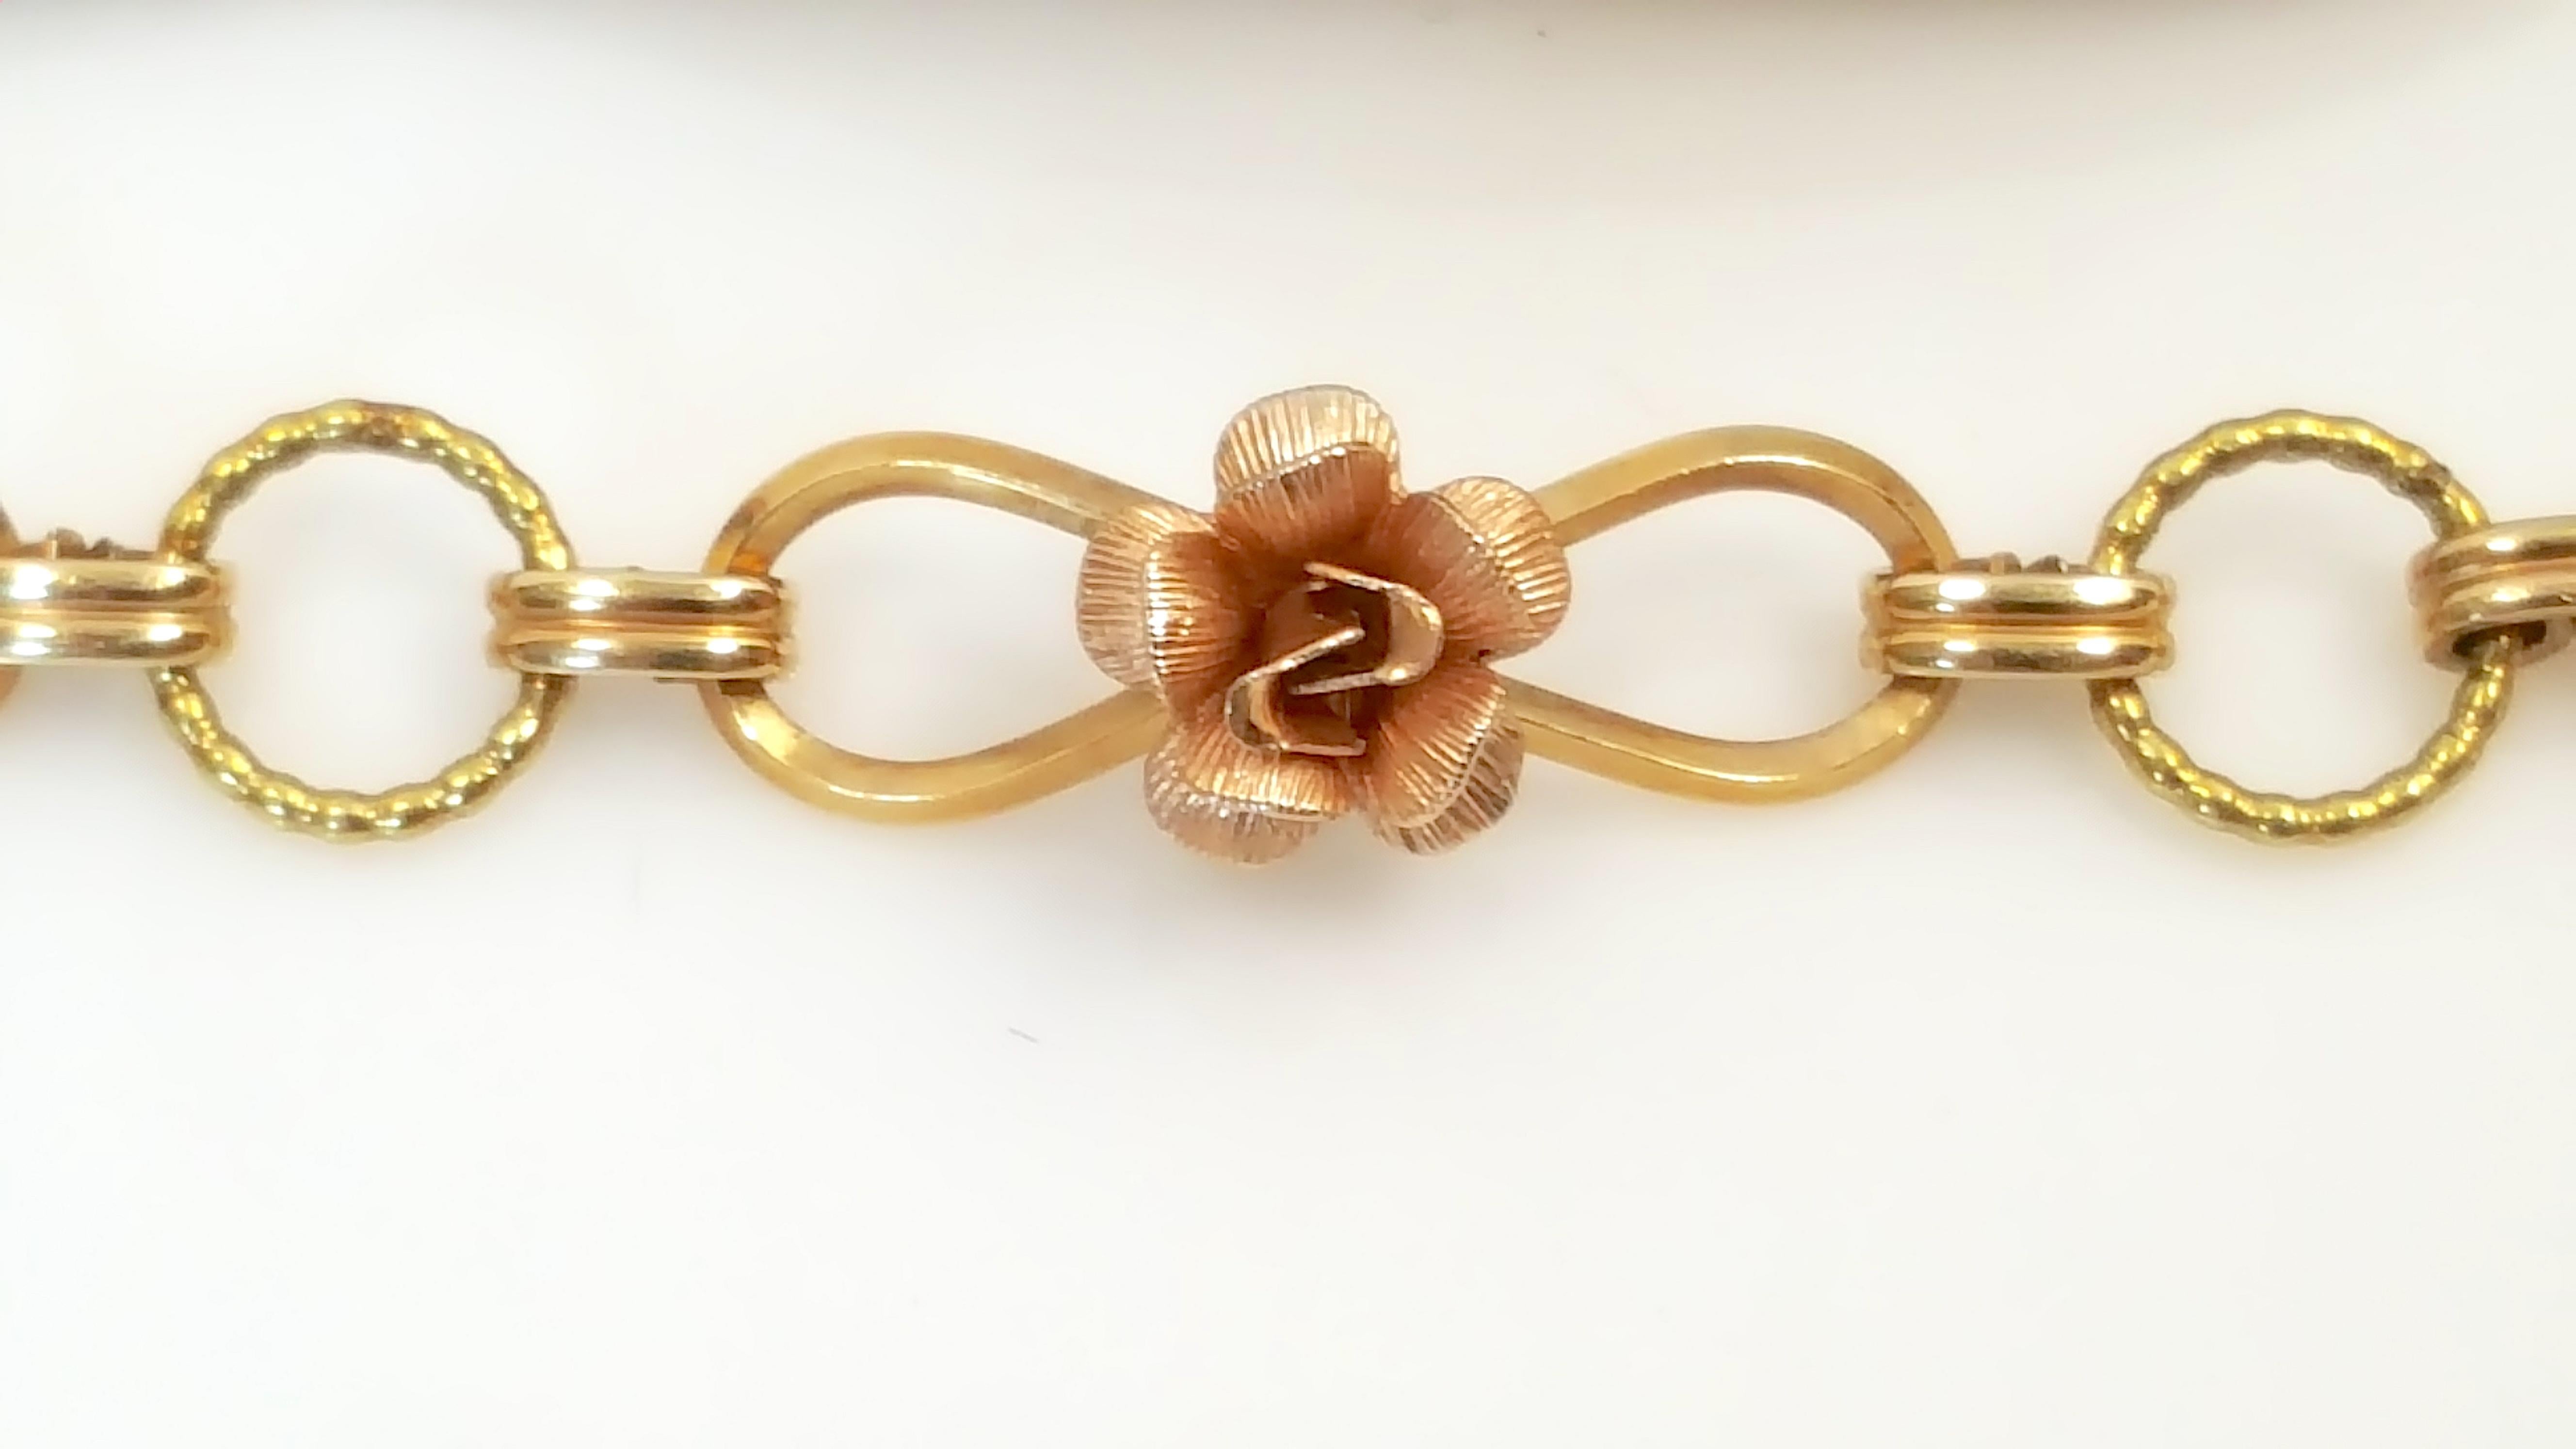 Krementz hat dieses Gliederarmband mit fünf Rosenblüten-Anhängern mit seiner charakteristischen mehrfarbigen Goldvergoldung versehen, die dafür bekannt ist, dass sie bis zu 30-mal dicker ist als die Überzüge anderer Schmuckhersteller, was die